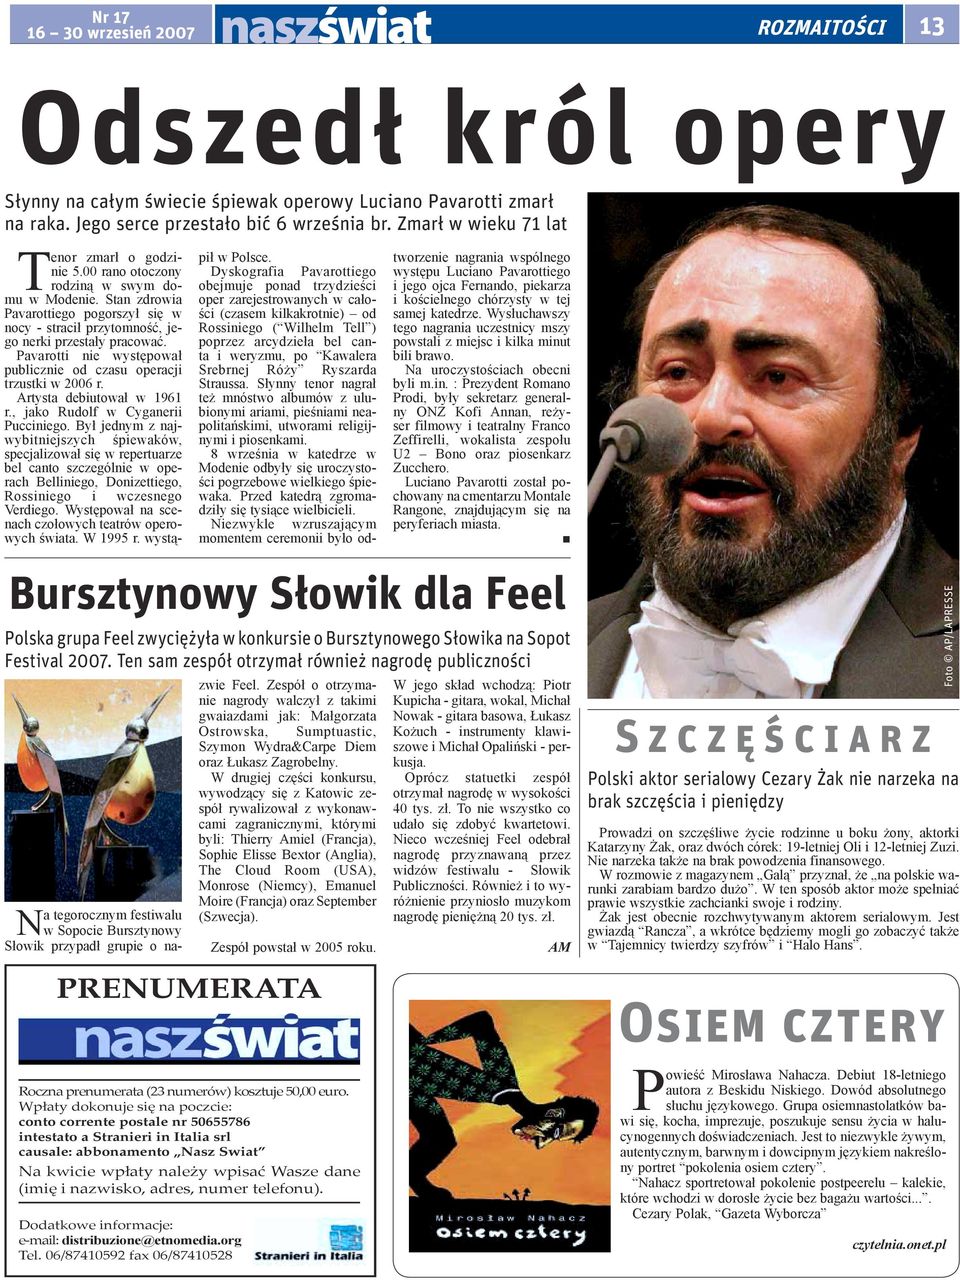 Pavarotti nie występował publicznie od czasu operacji trzustki w 2006 r. Artysta debiutował w 1961 r., jako Rudolf w Cyganerii Pucciniego.